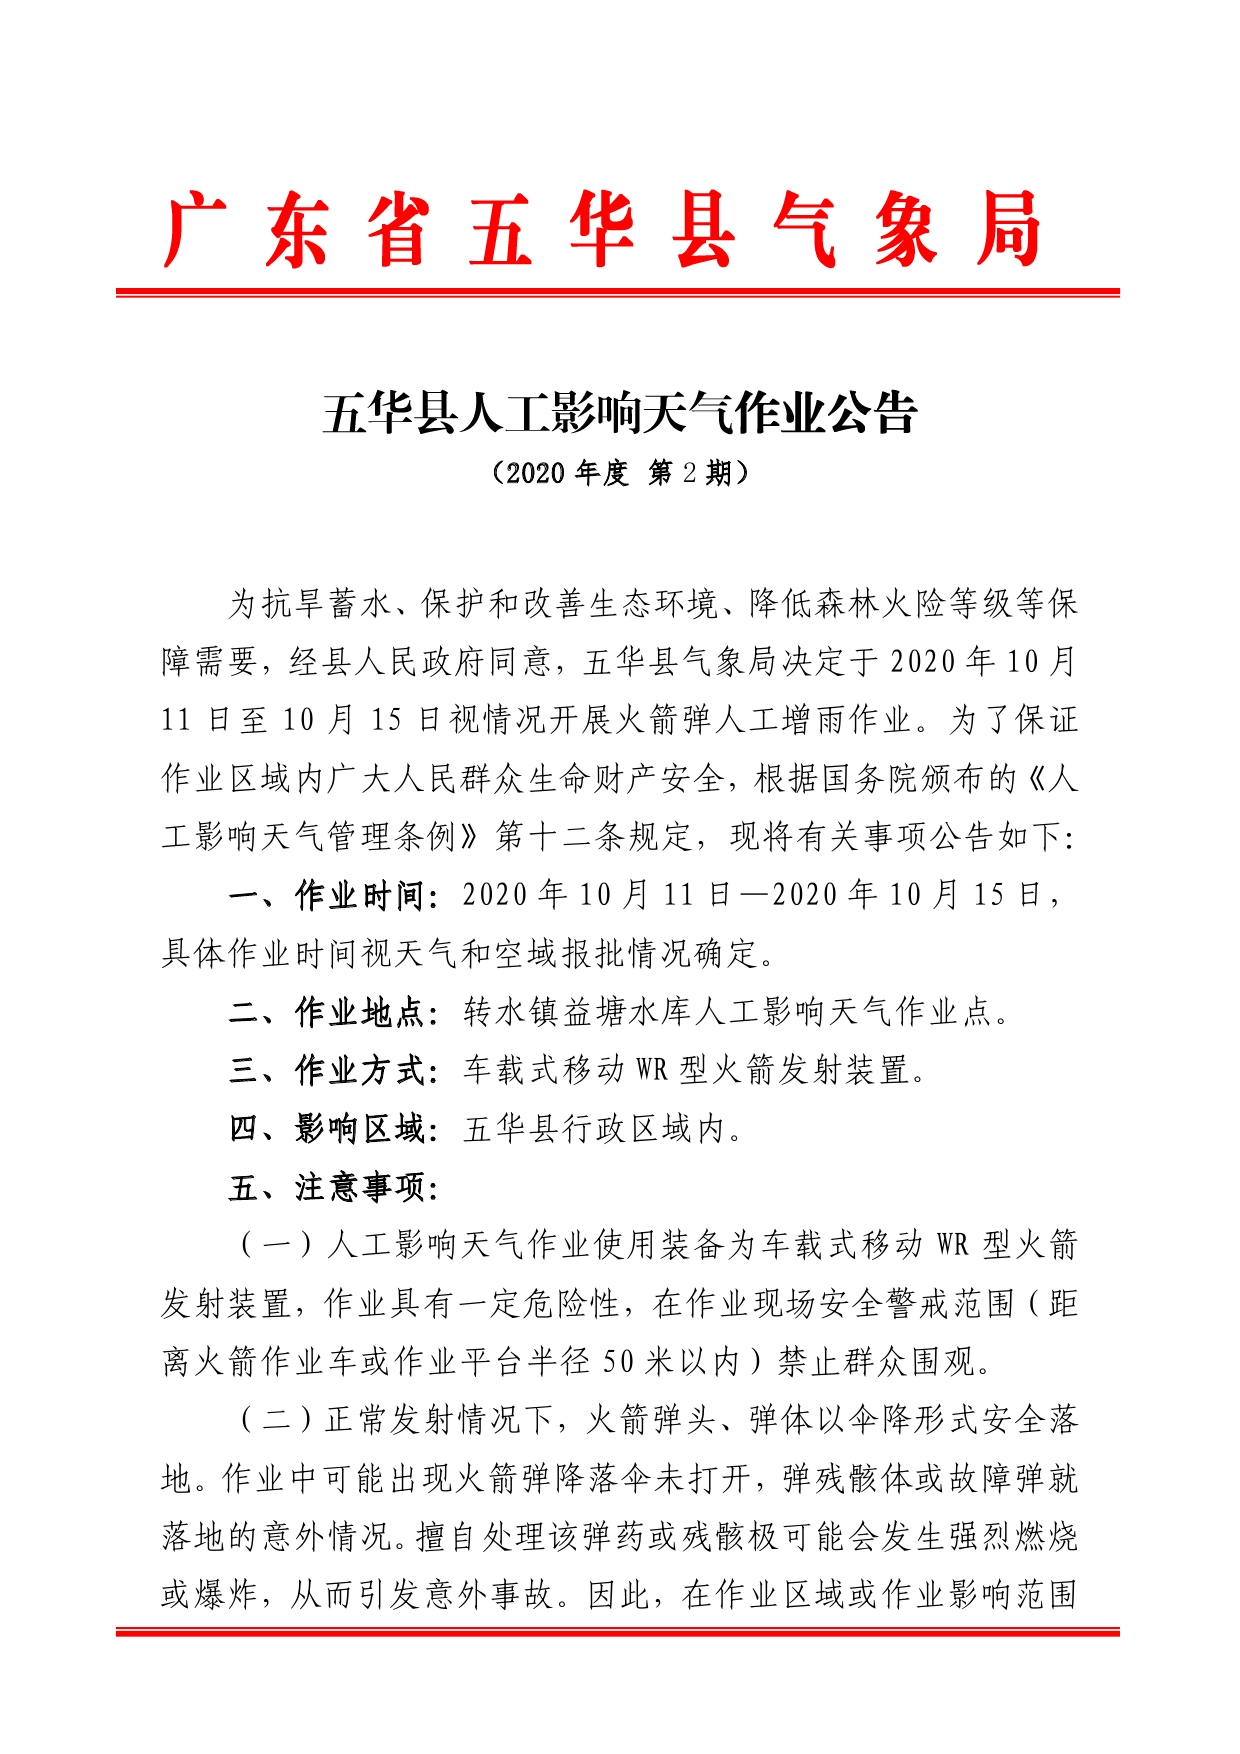 五华县人工影响天气作业公告2020 （第2期）0000.jpg